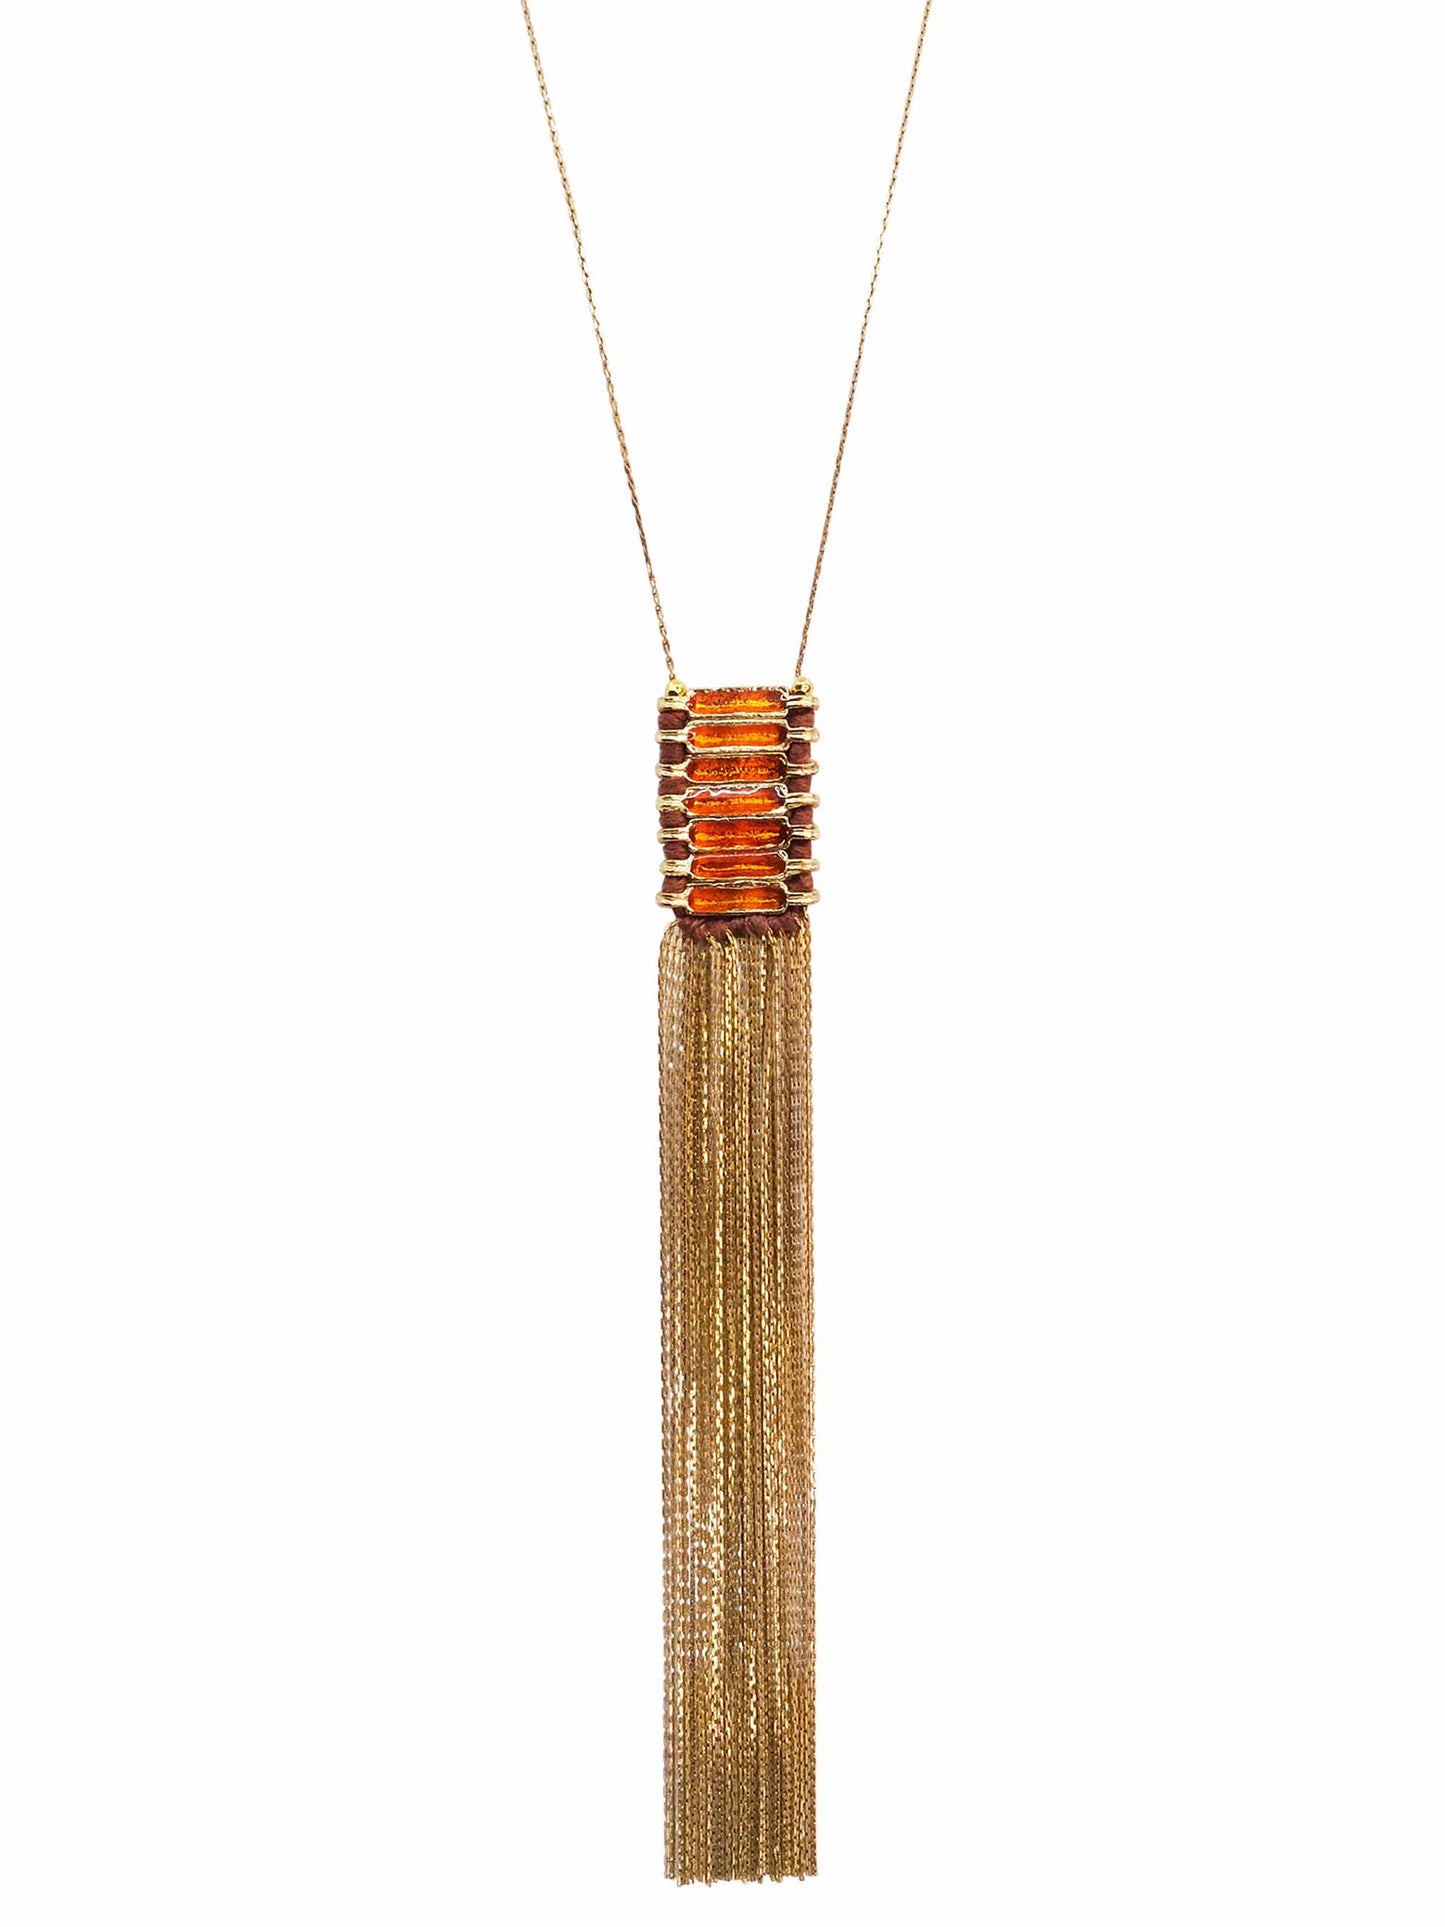 Gold Copper Enamel Pendant Chain Necklace